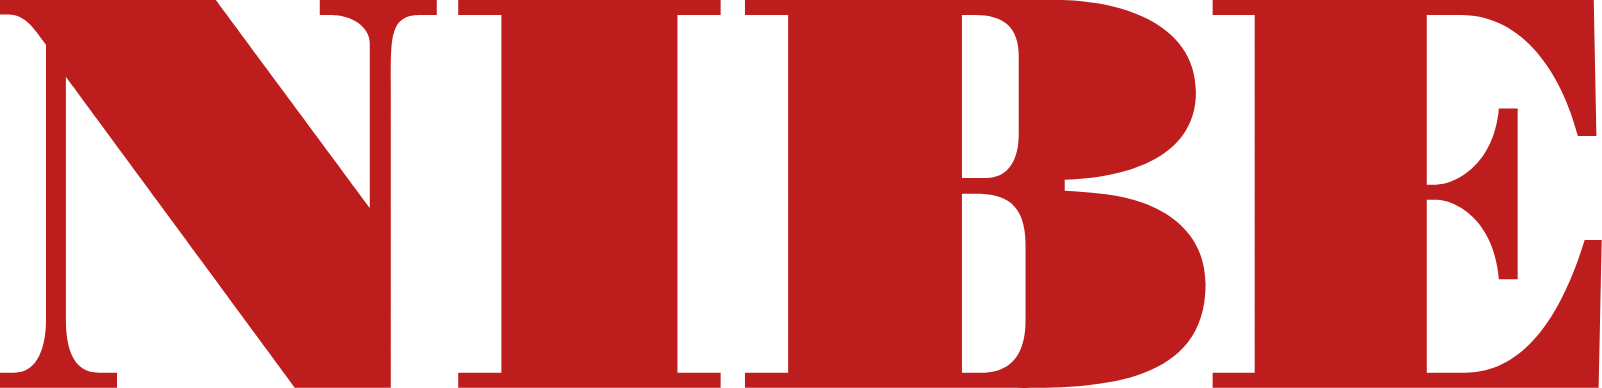 NIBE Industrier logo large (transparent PNG)